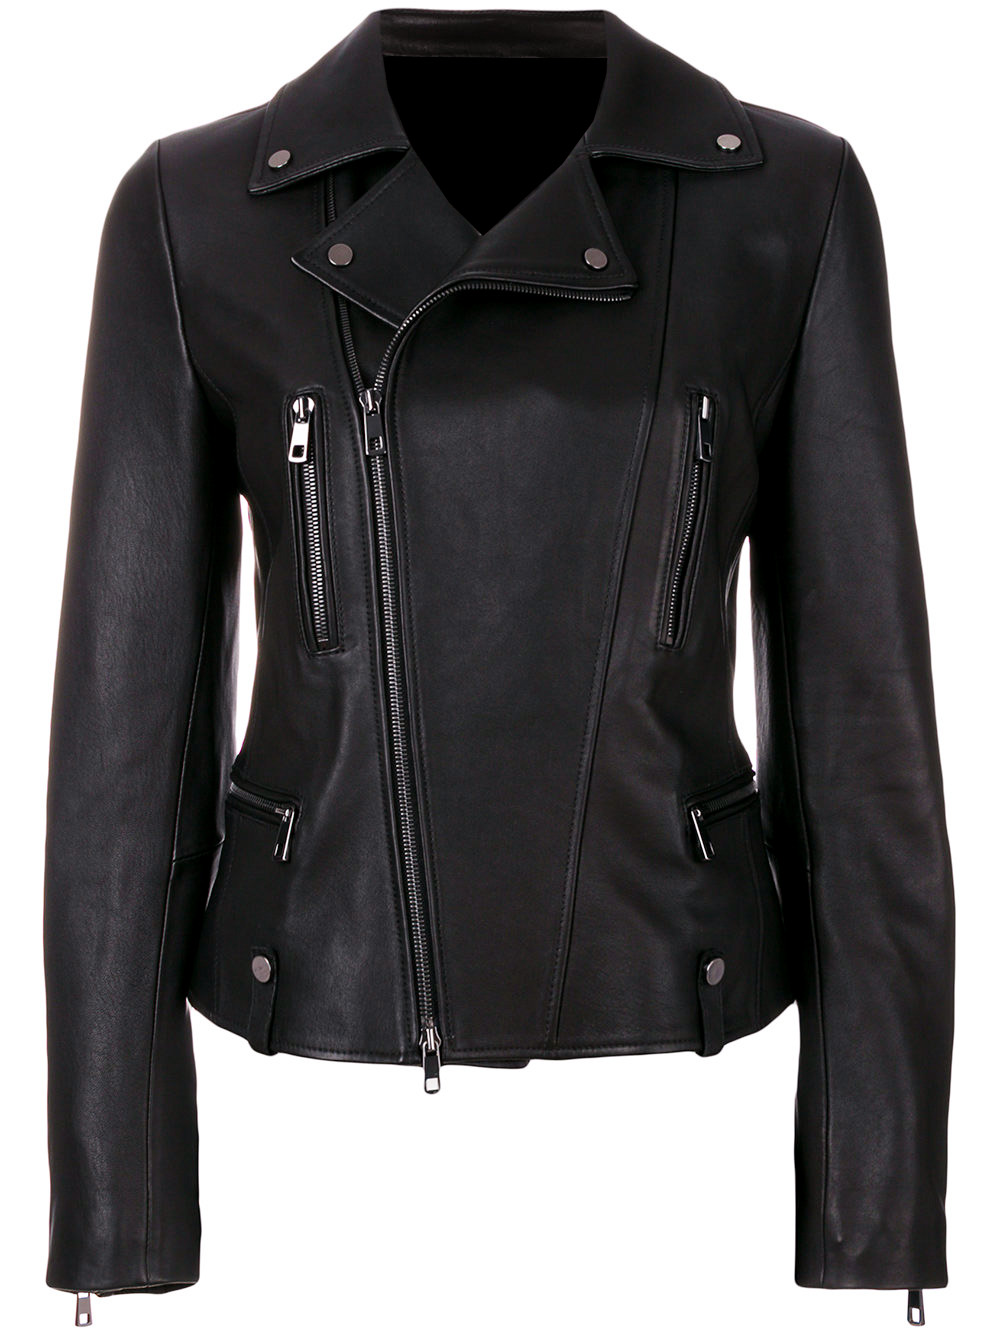 Women Biker Leather Jackets Stylish Appealing Attire | Shop Now